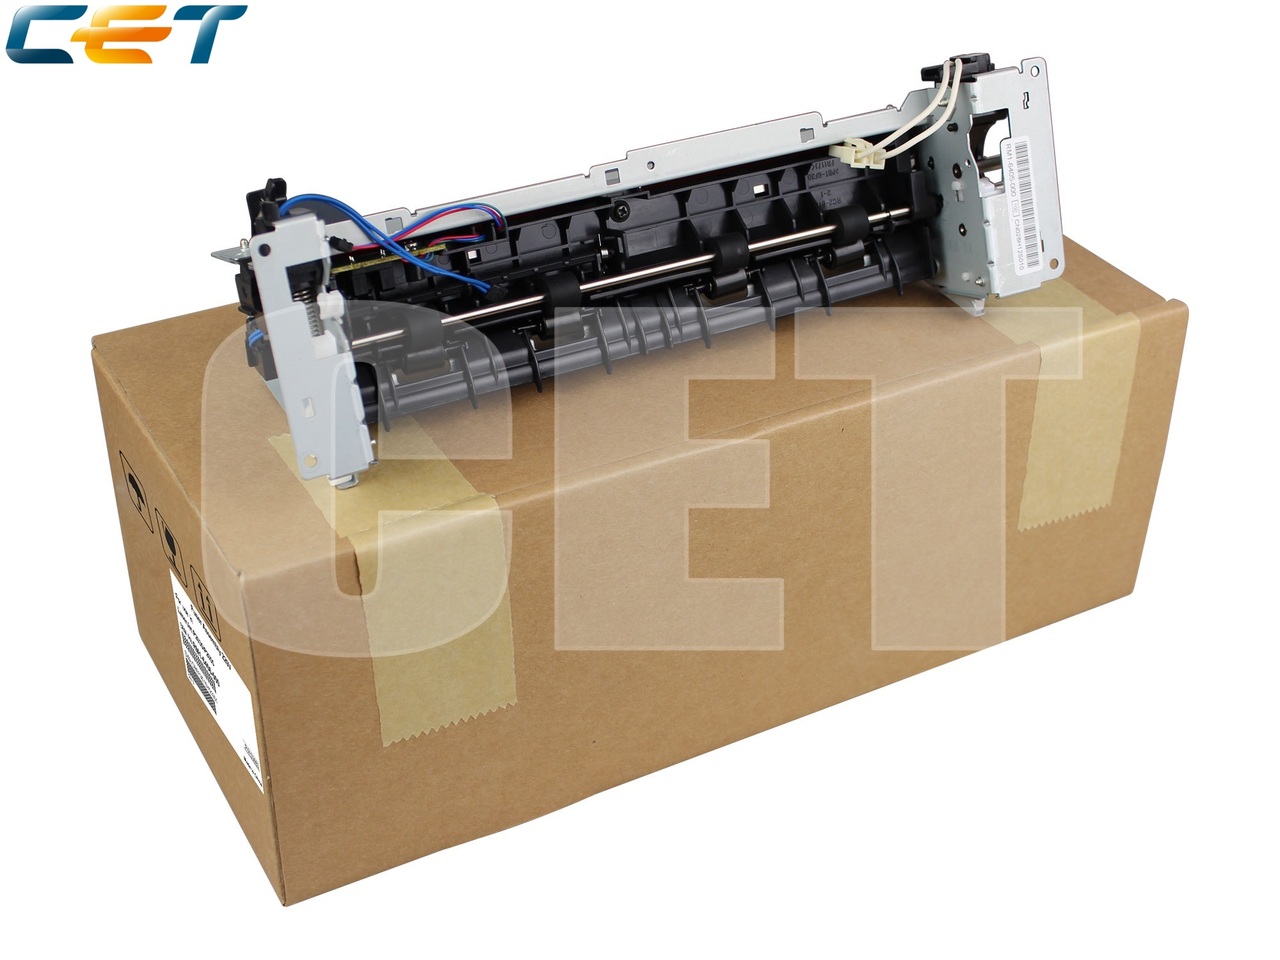 Фьюзер (печка) в сборе RM1-6406-000 для HP LaserJetP2035/P2055 (CET), (восстановленный), CET3683